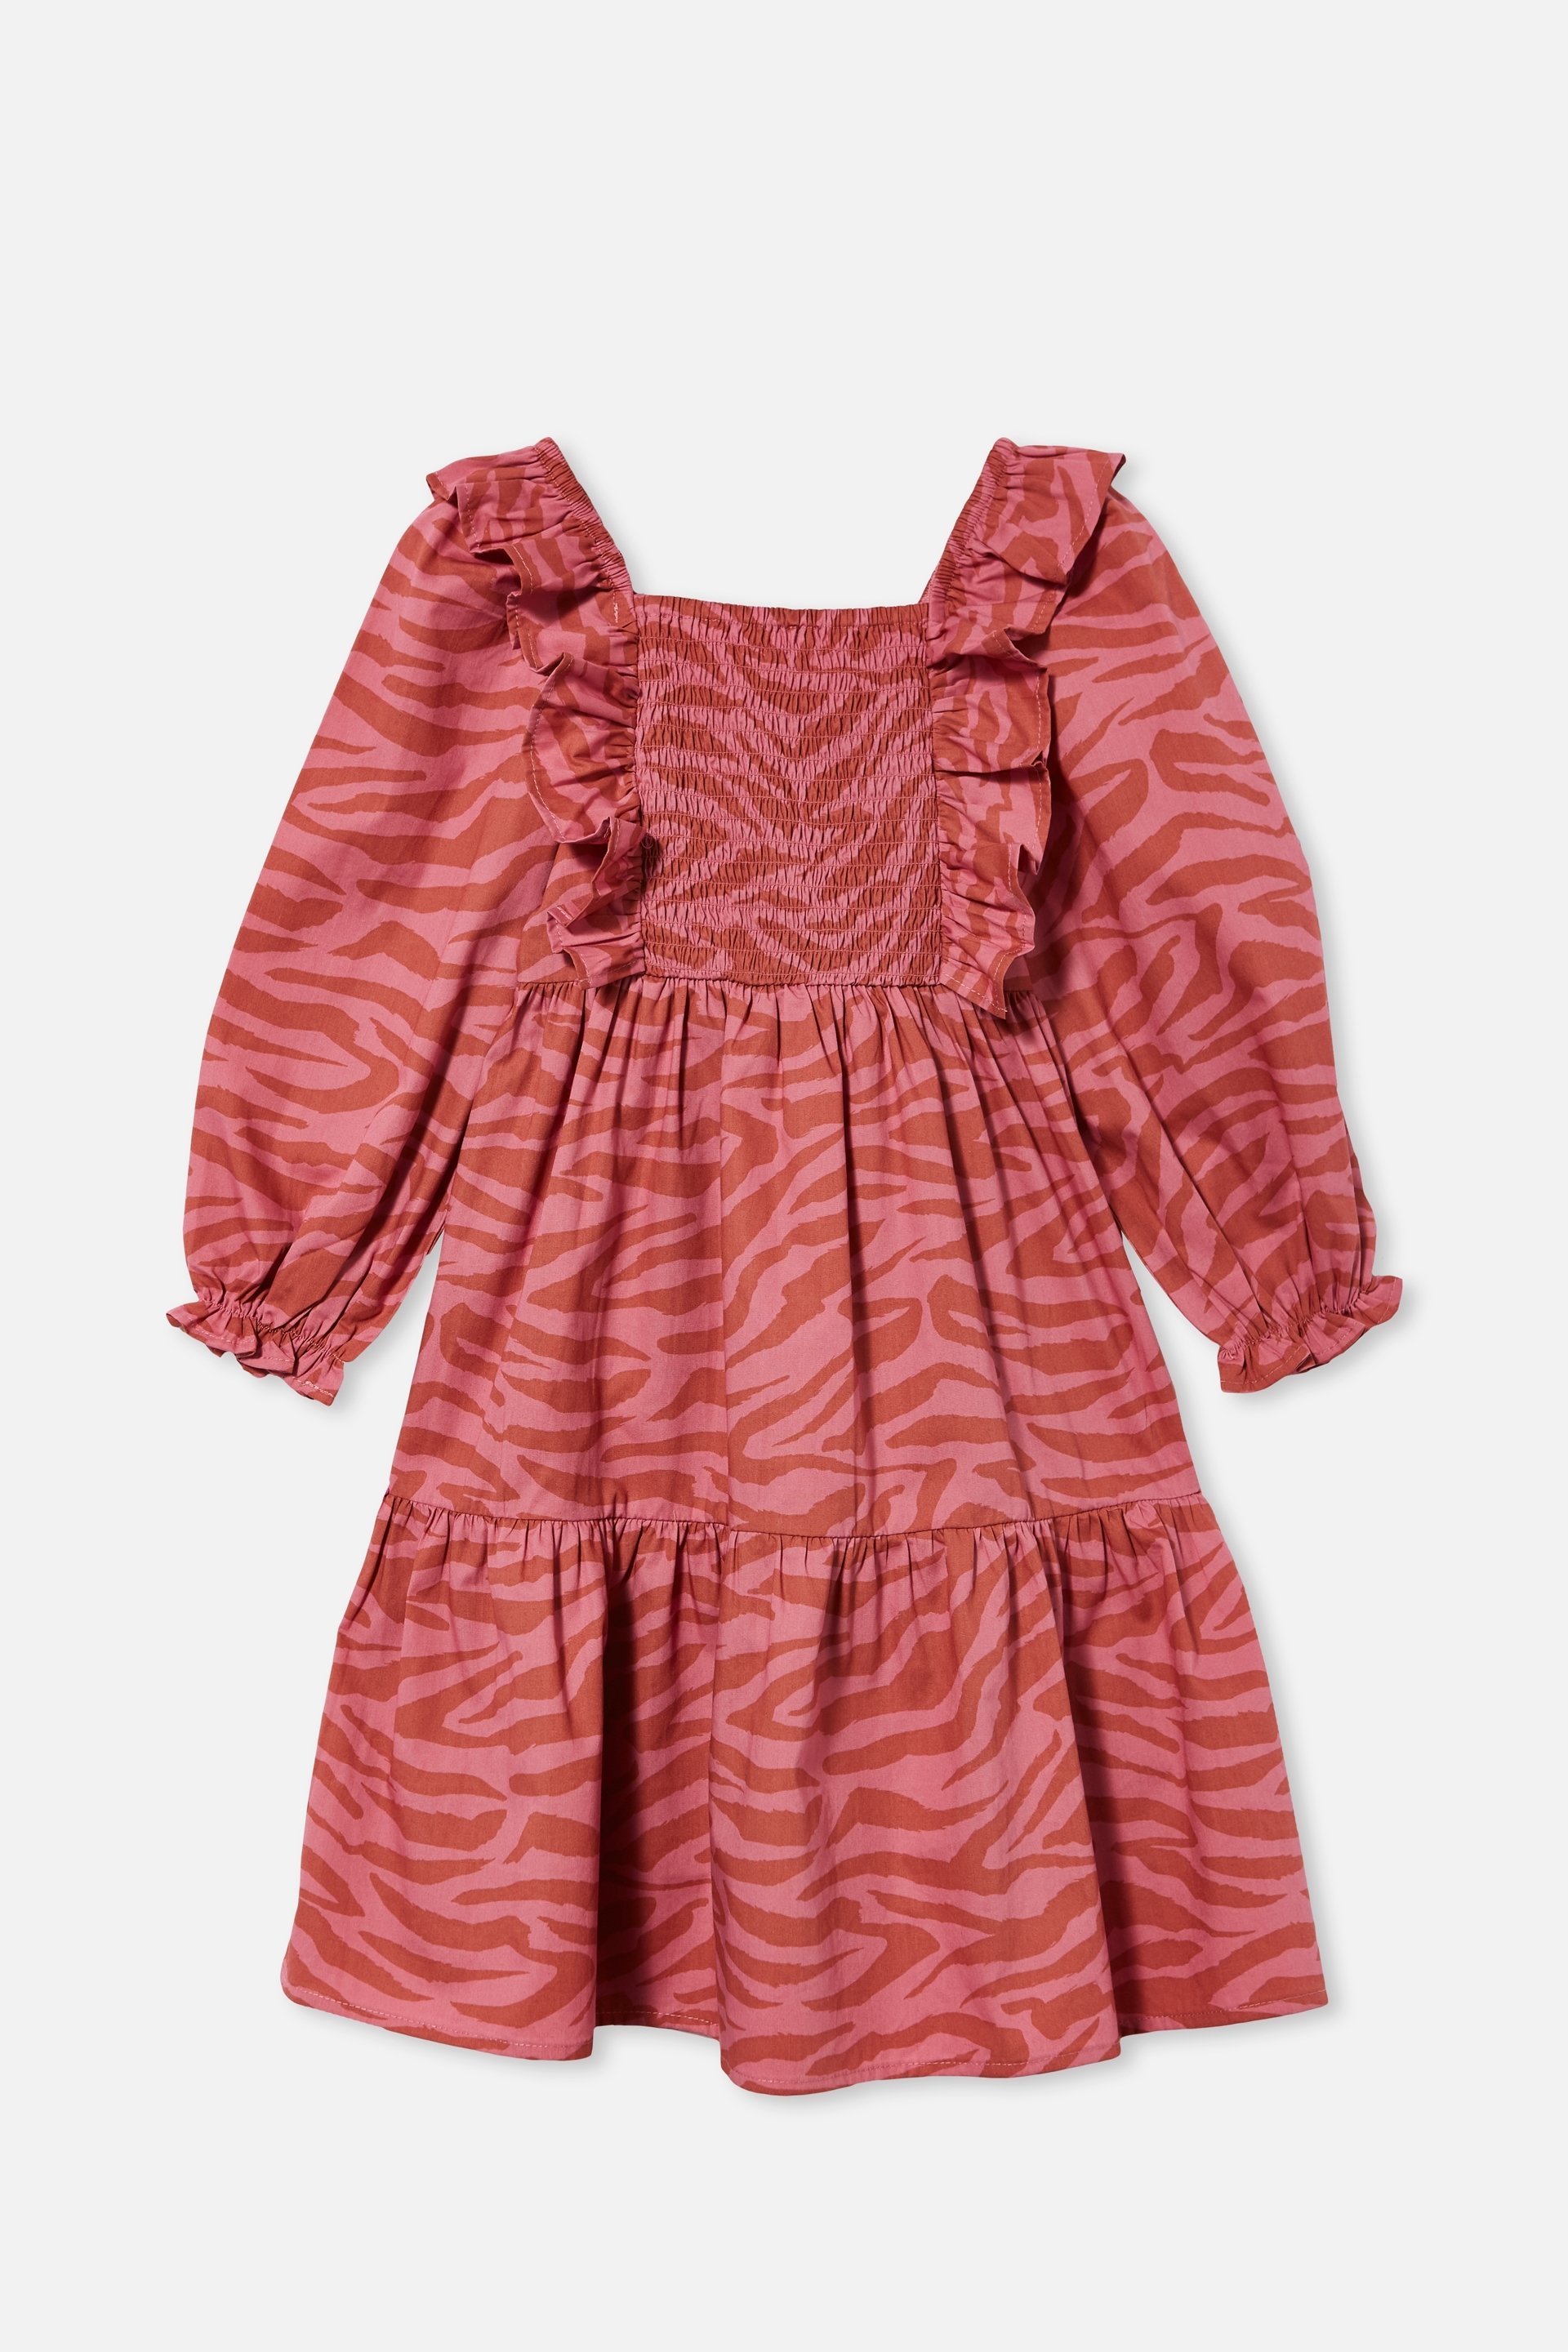 Cotton On Kids - Jenna Long Sleeve Dress - Very berry tiger